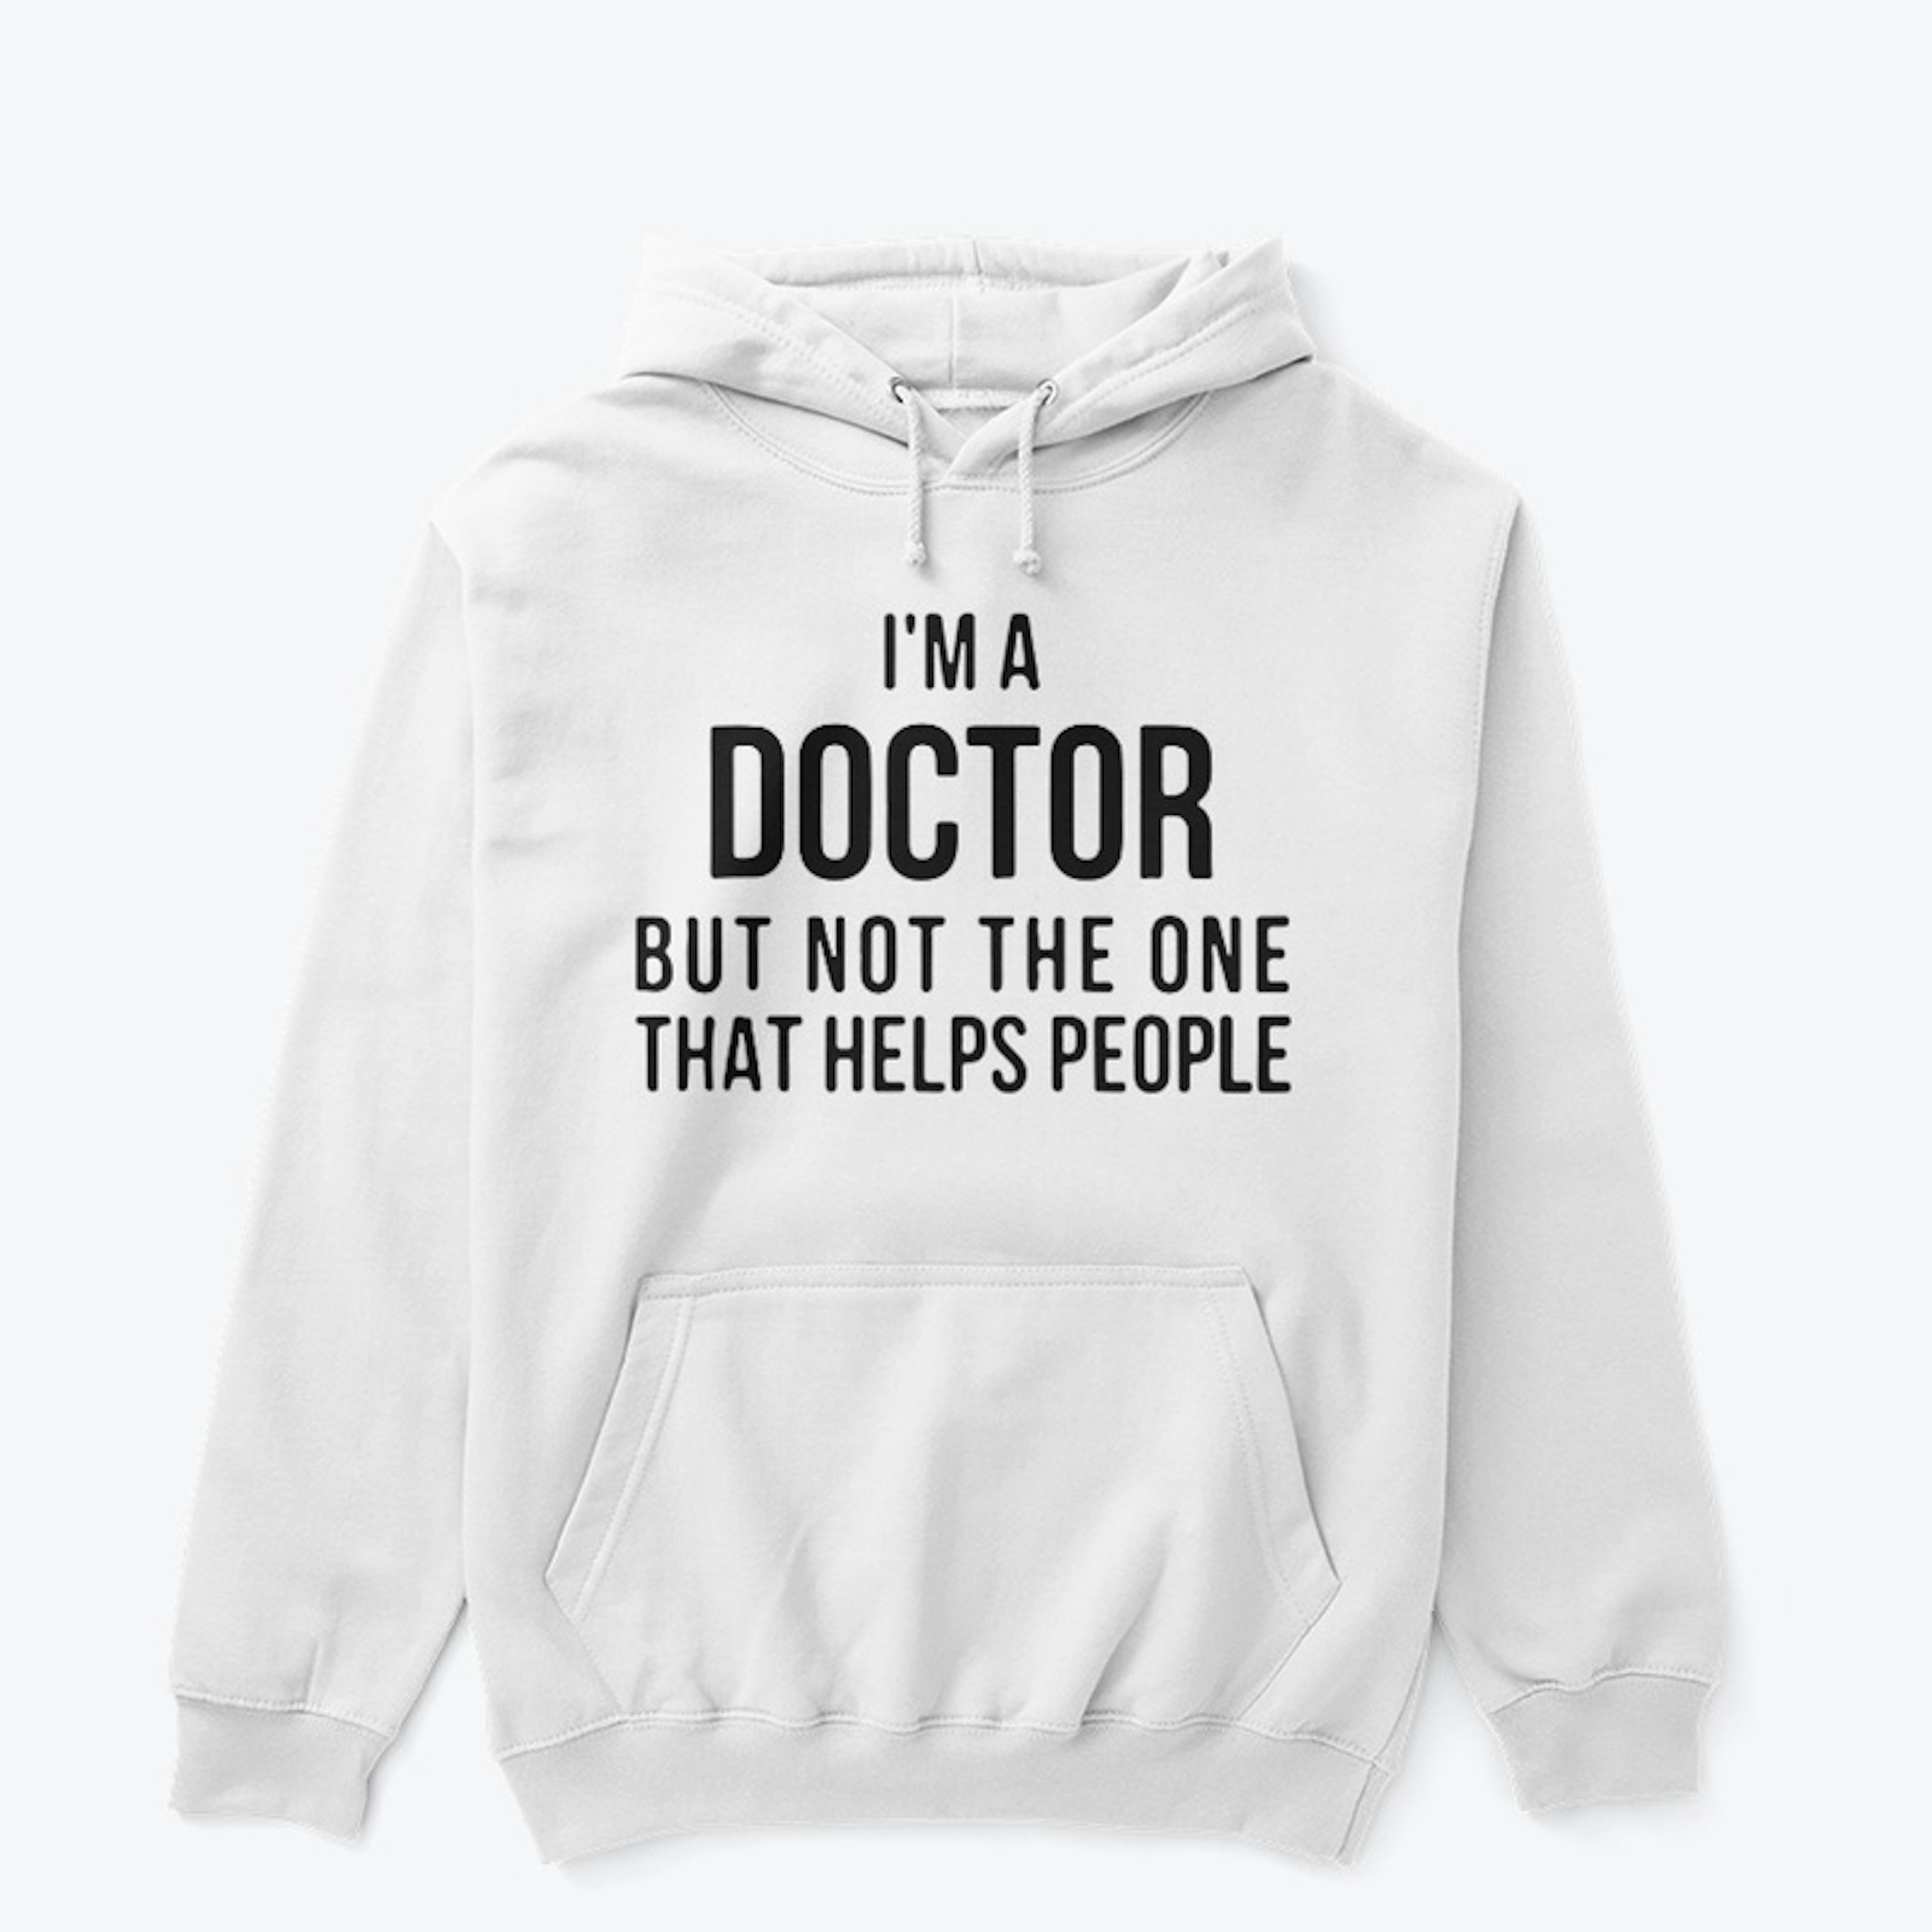 Physician T-shirt